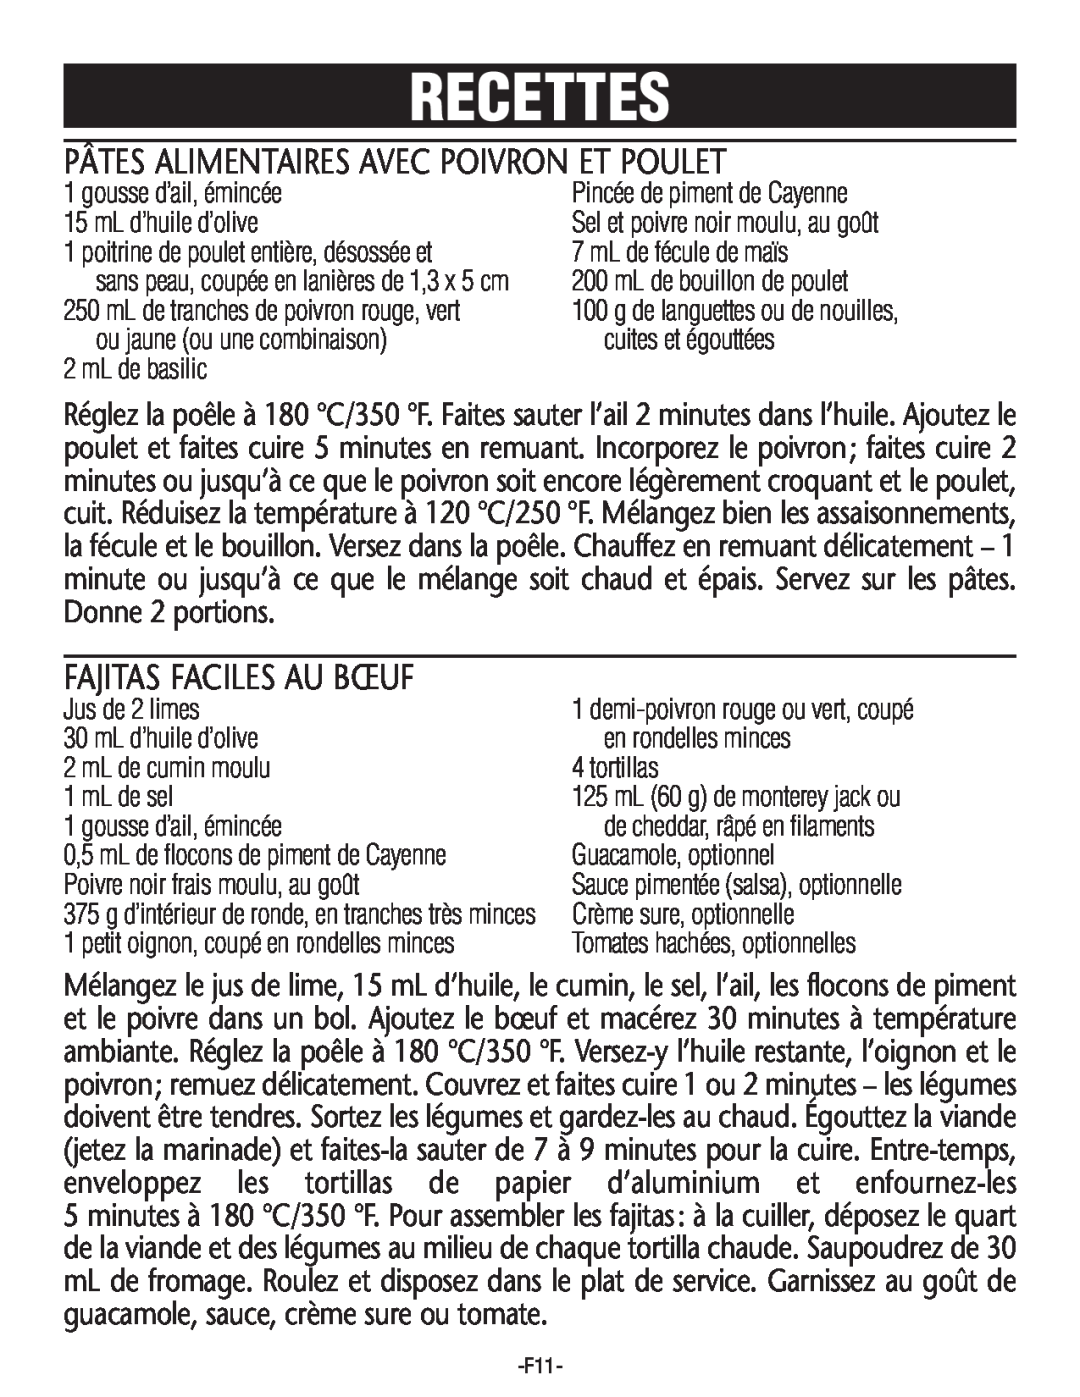 Rival S16SG-CN manual Pâtes Alimentaires Avec Poivron Et Poulet, Fajitas Faciles Au Bœuf, Recettes 